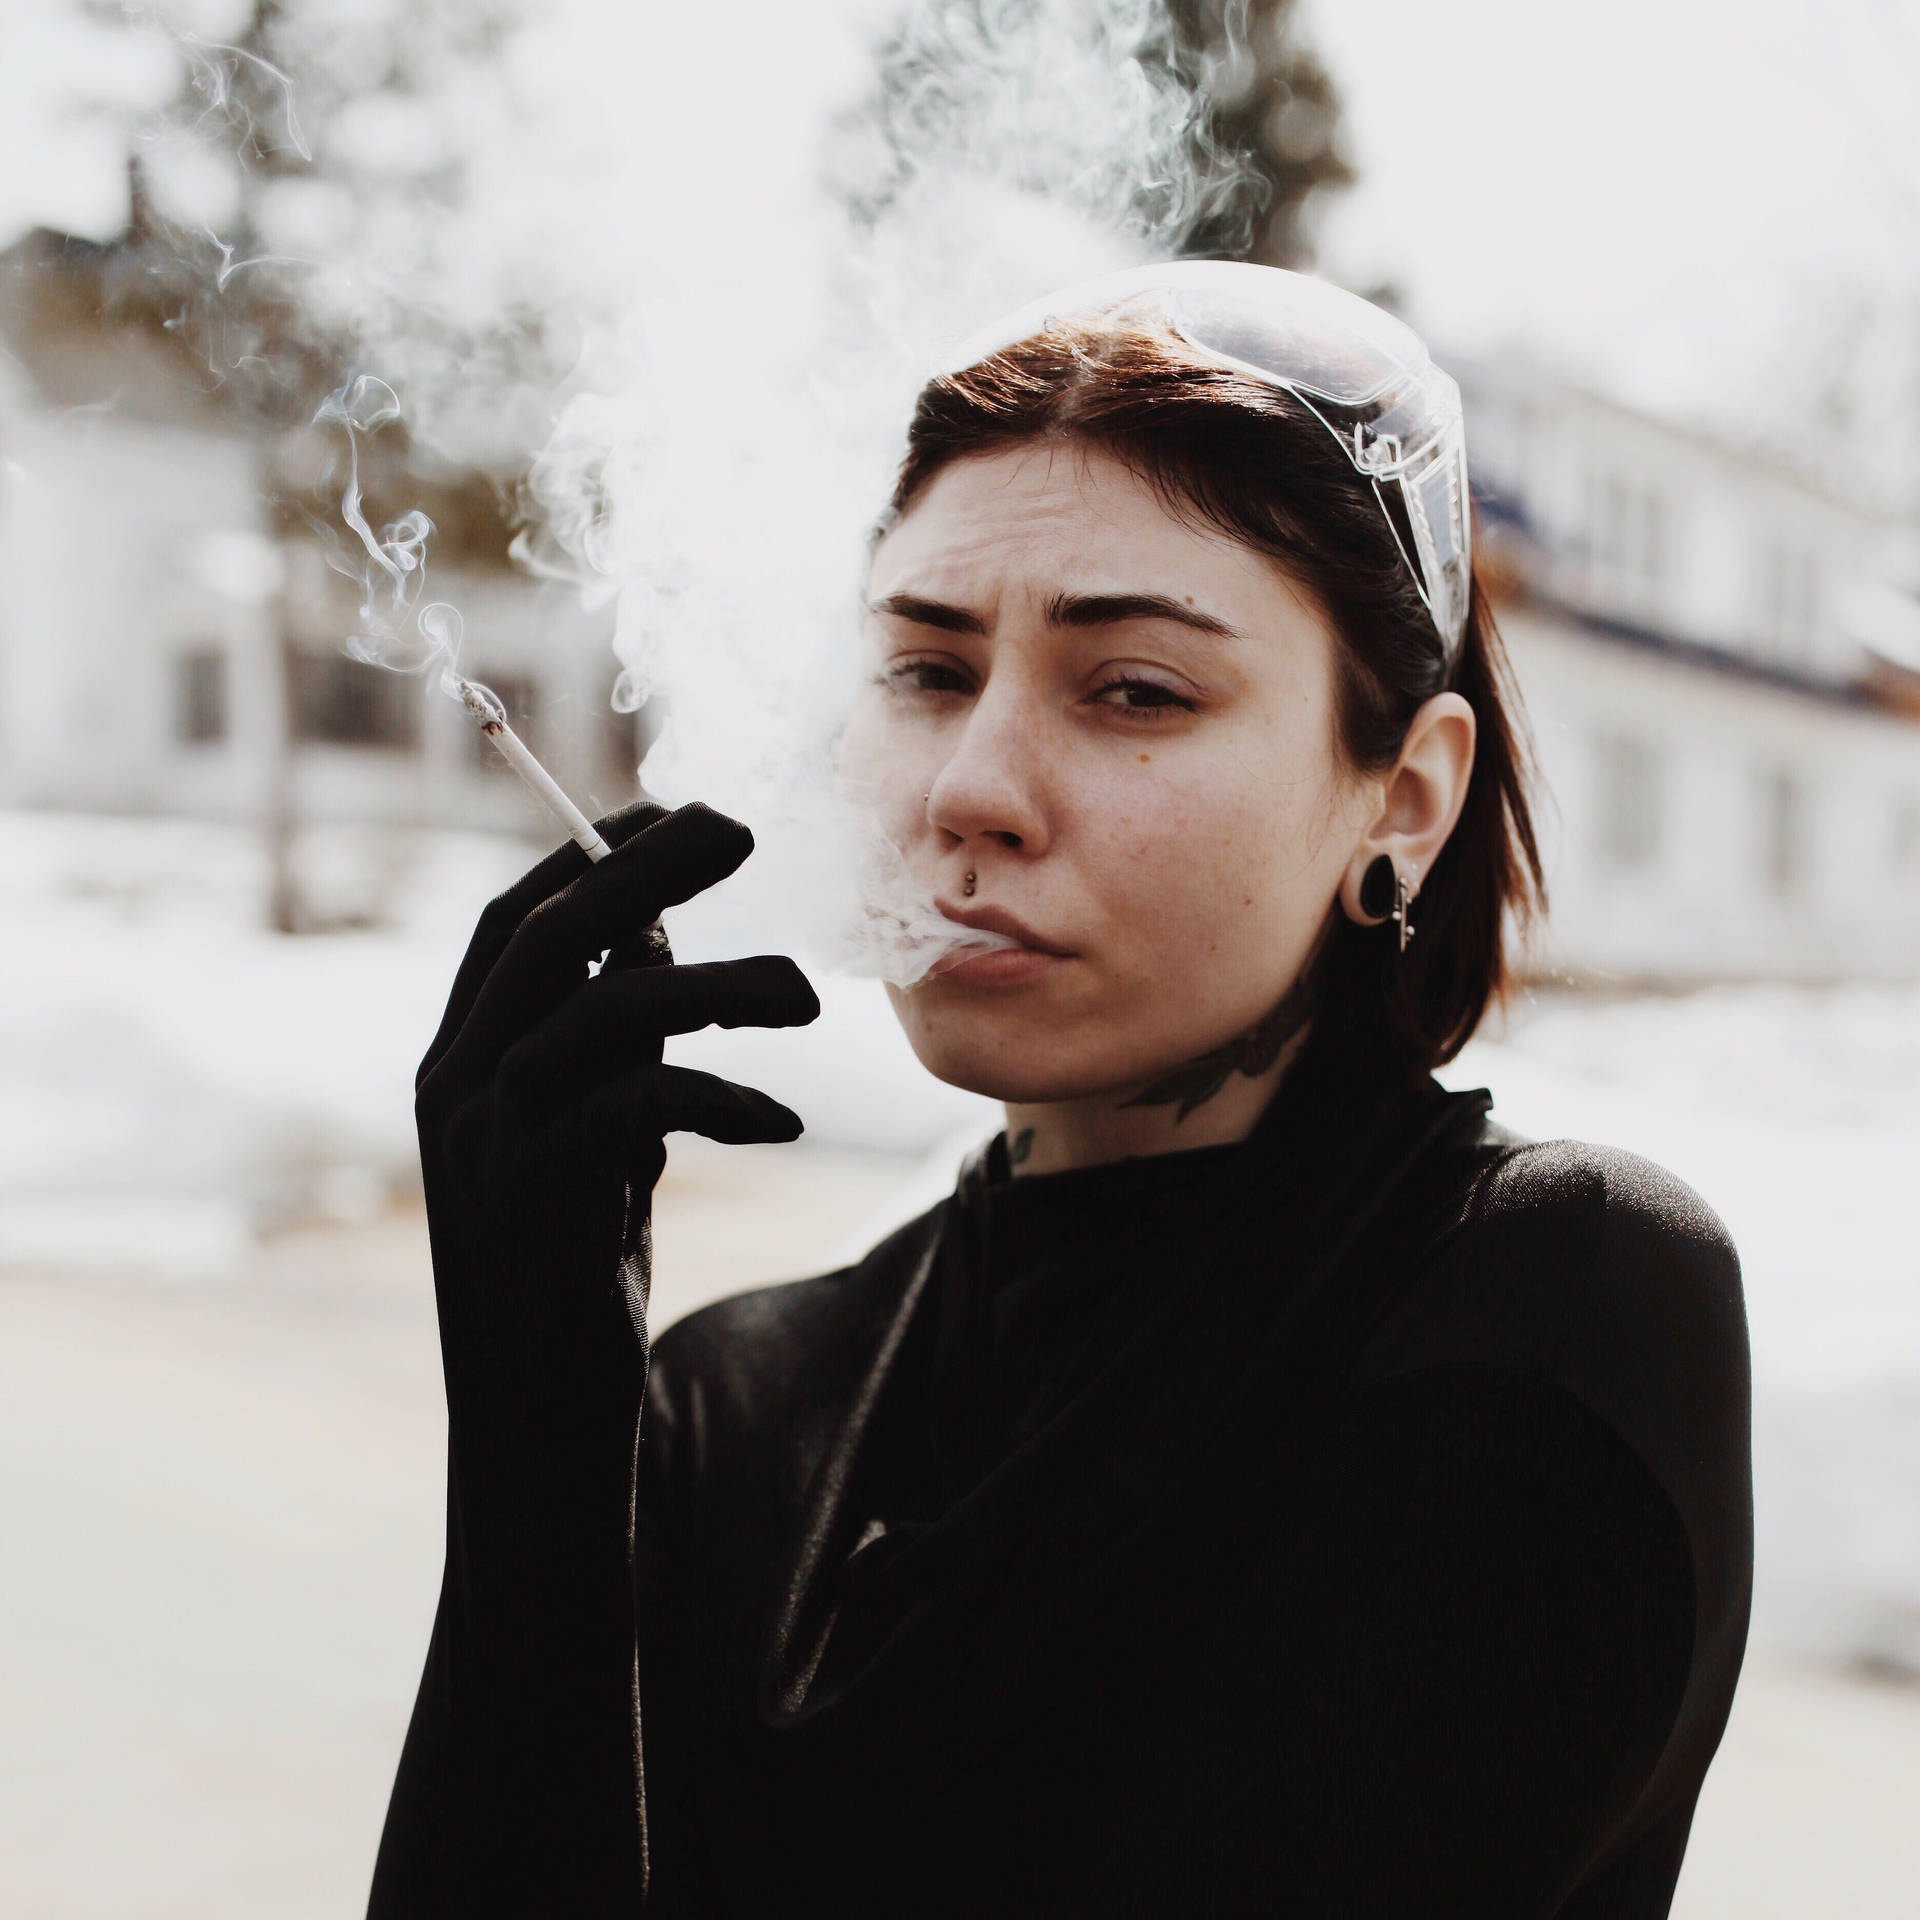 Woman In Black Smoking